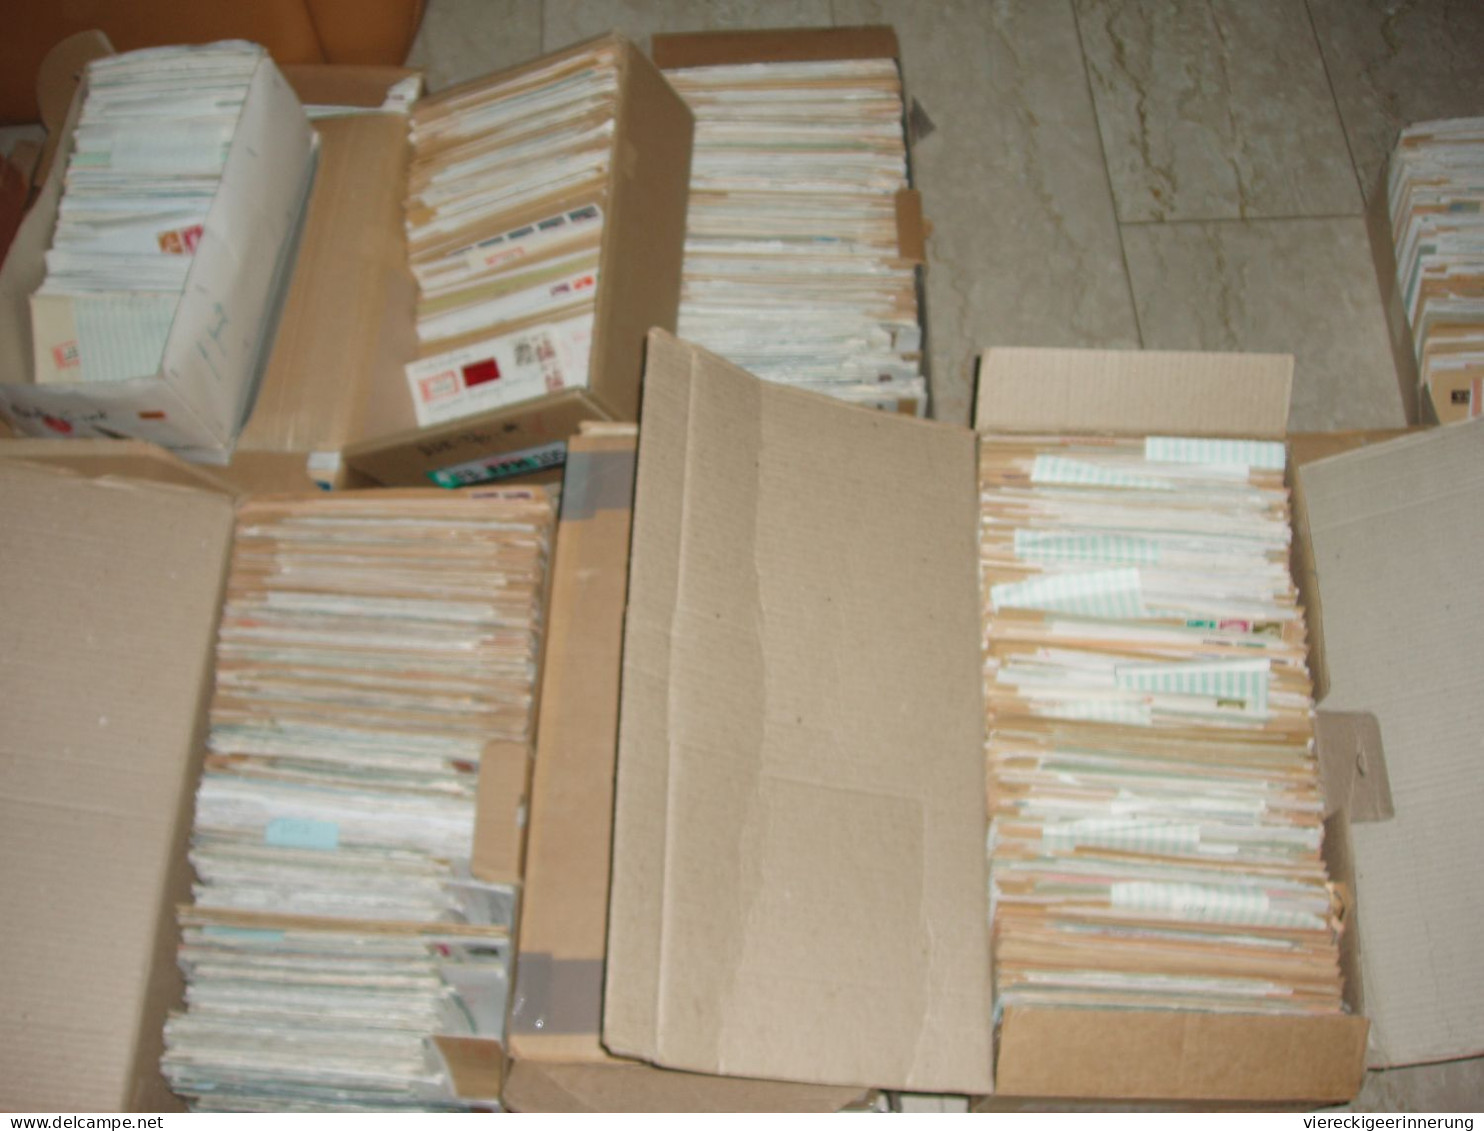 ! 5 Kartons Frankfurt Am Main, Ca. 3000 R-Briefe, Deutsche Einschreiben, Alte 6000 Er Postleitzahl , 1969-1999 - Lots & Kiloware (mixtures) - Min. 1000 Stamps